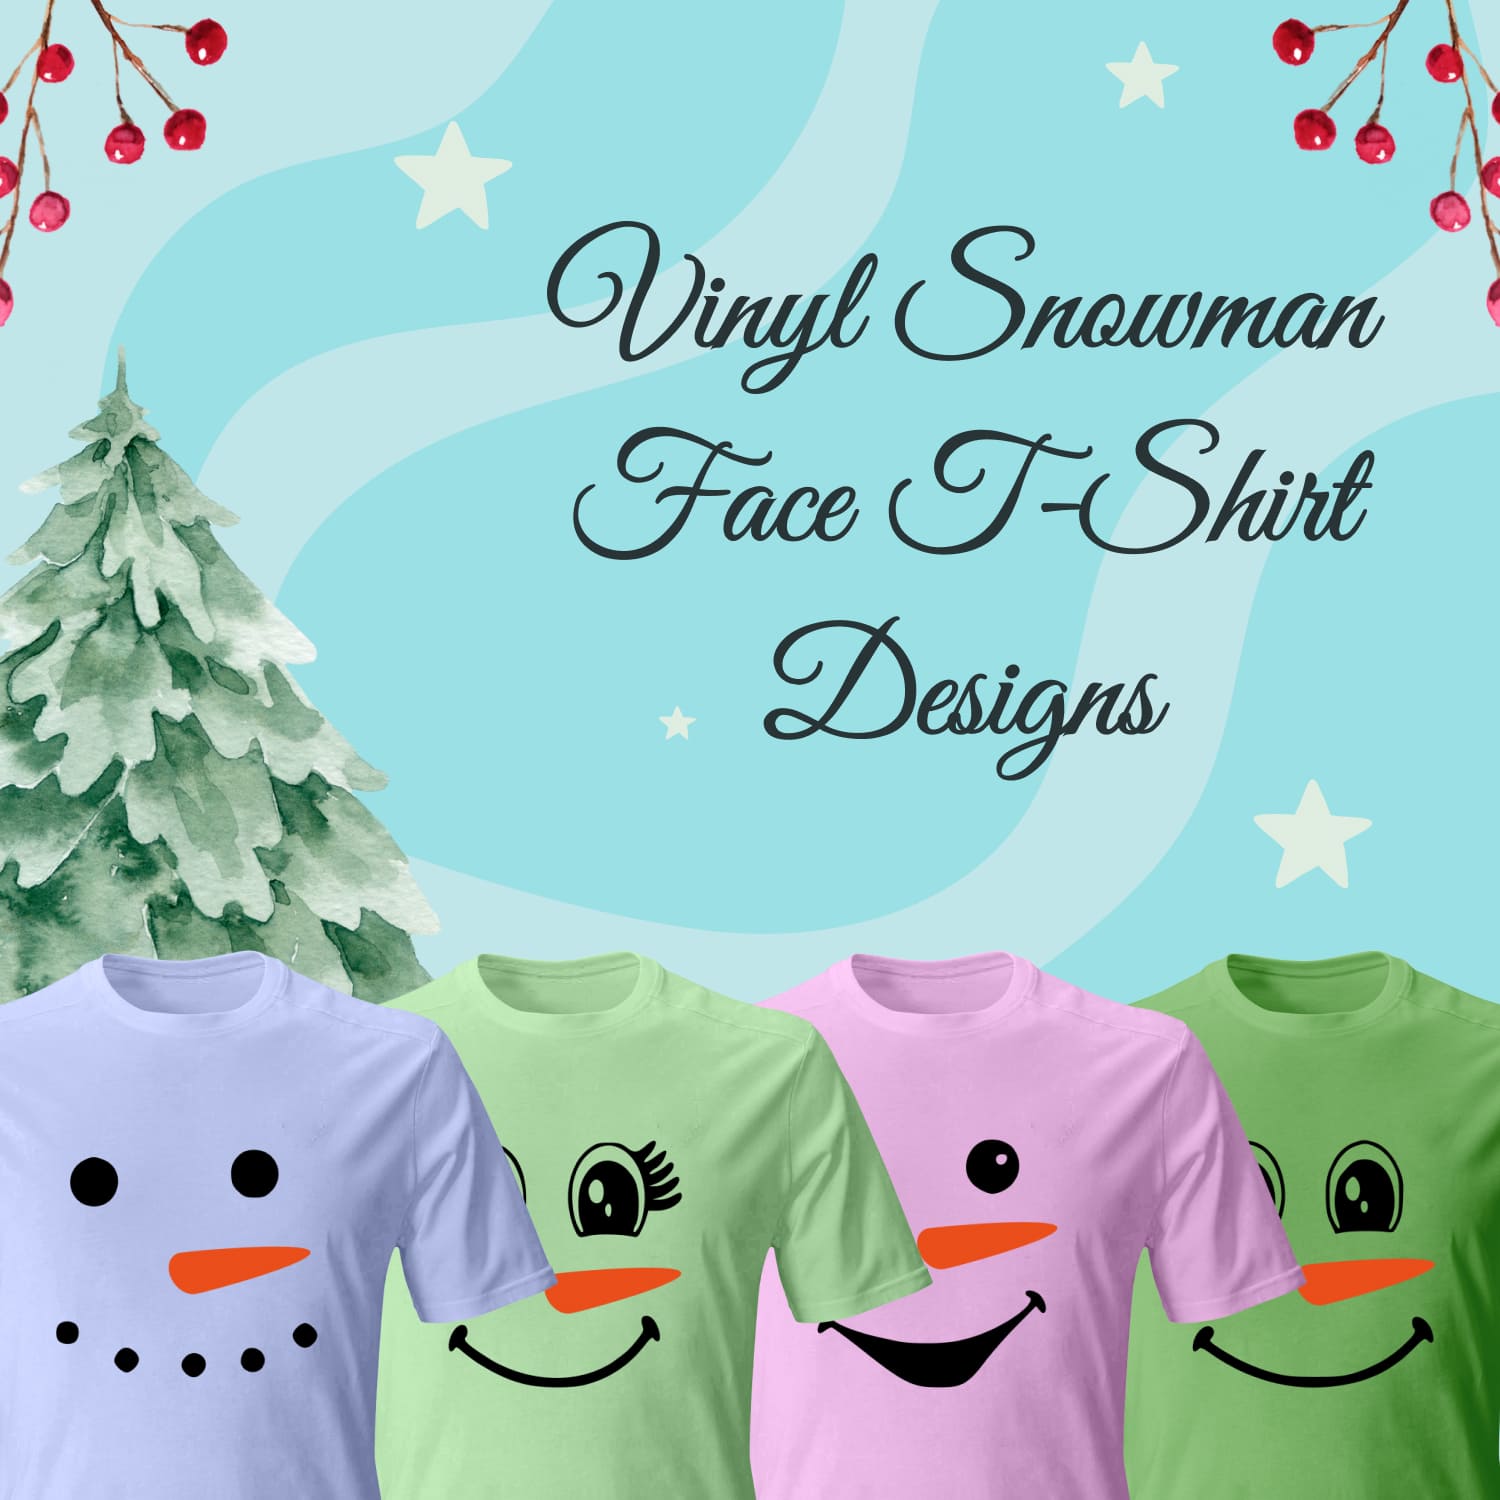 vinyl snowman face svg T-shirt Designs.